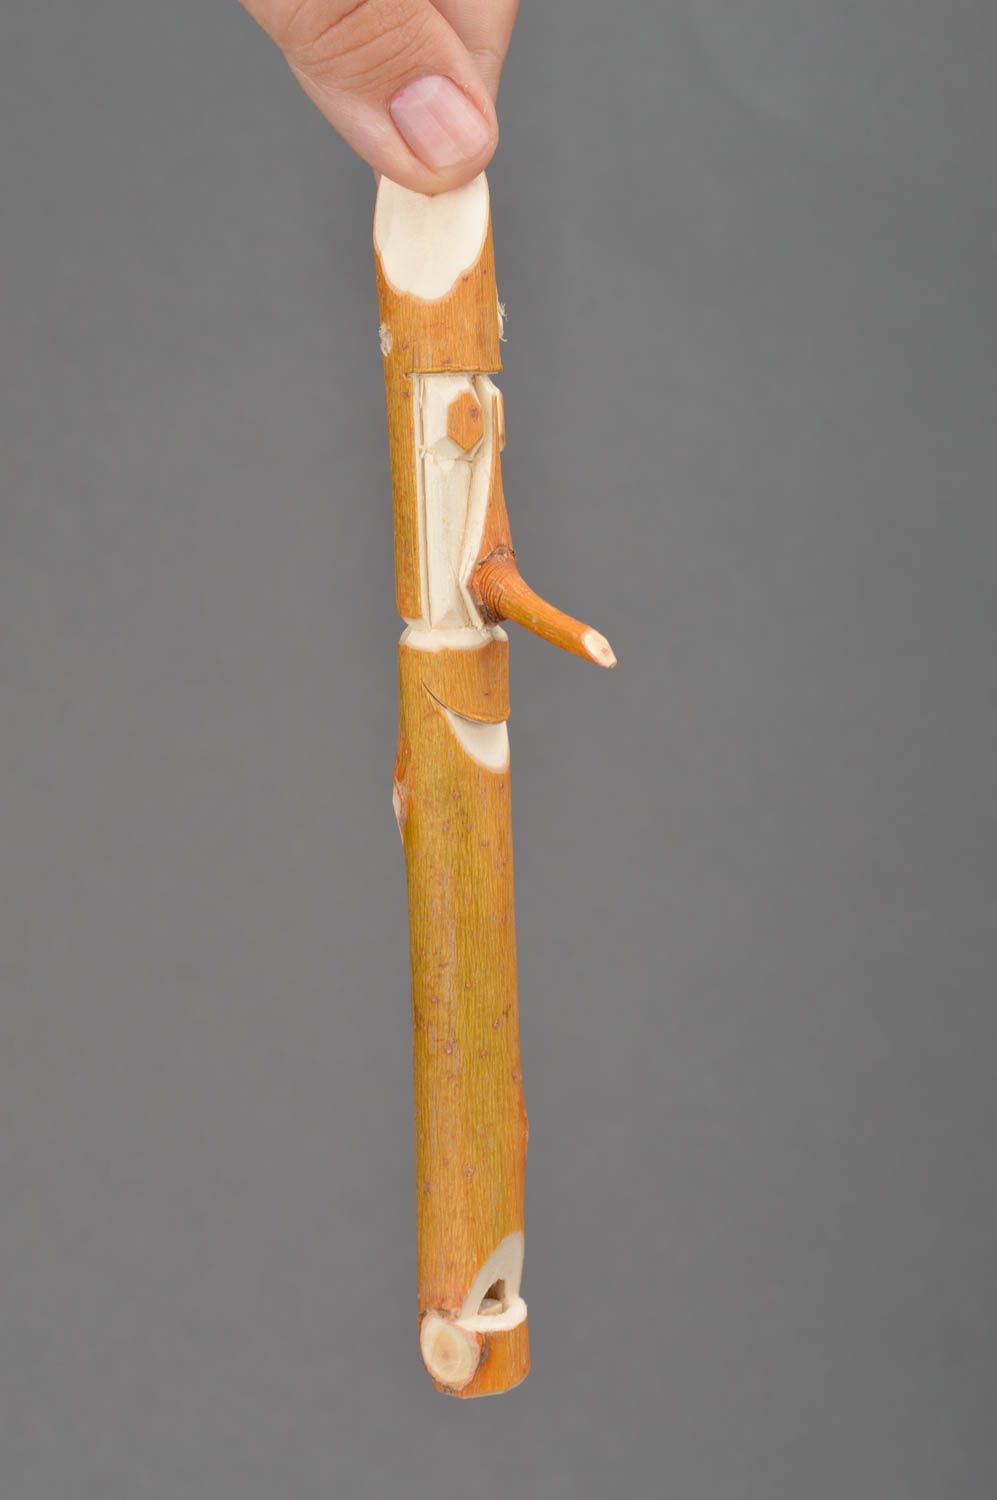 Деревянное музыкальное изделие свисток деревянный мужское лицо ручной работы фото 2